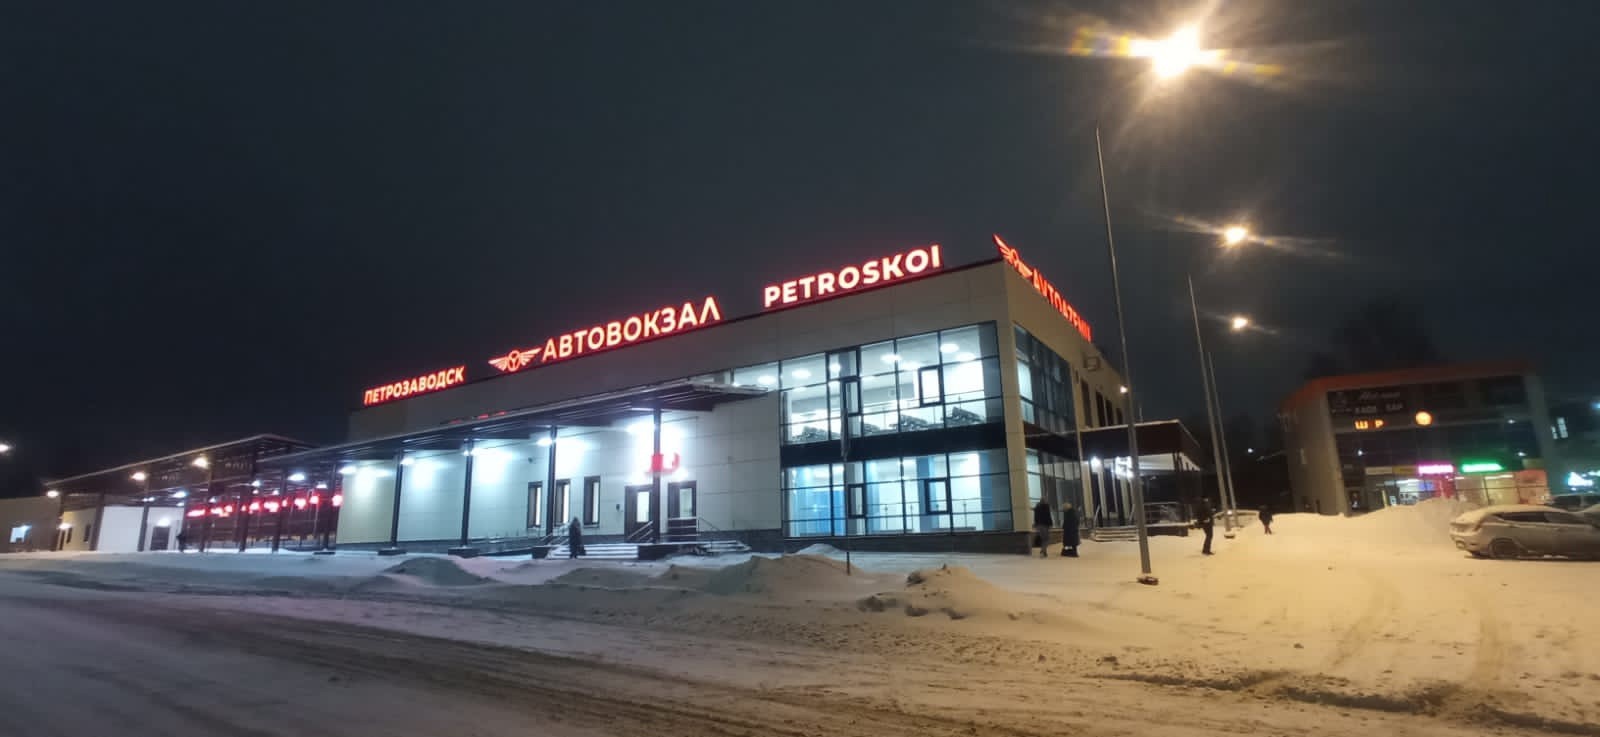 Petroskoin linja-autoasemalla on muun muassa kaksi odotussalia, lääkärinhuone, äiti- ja lapsihuone, kuljettajan lepohuone ja lipunmyyntipisteet. Kuva: Karelavtotrans-yhtiön VKontakte-sivu